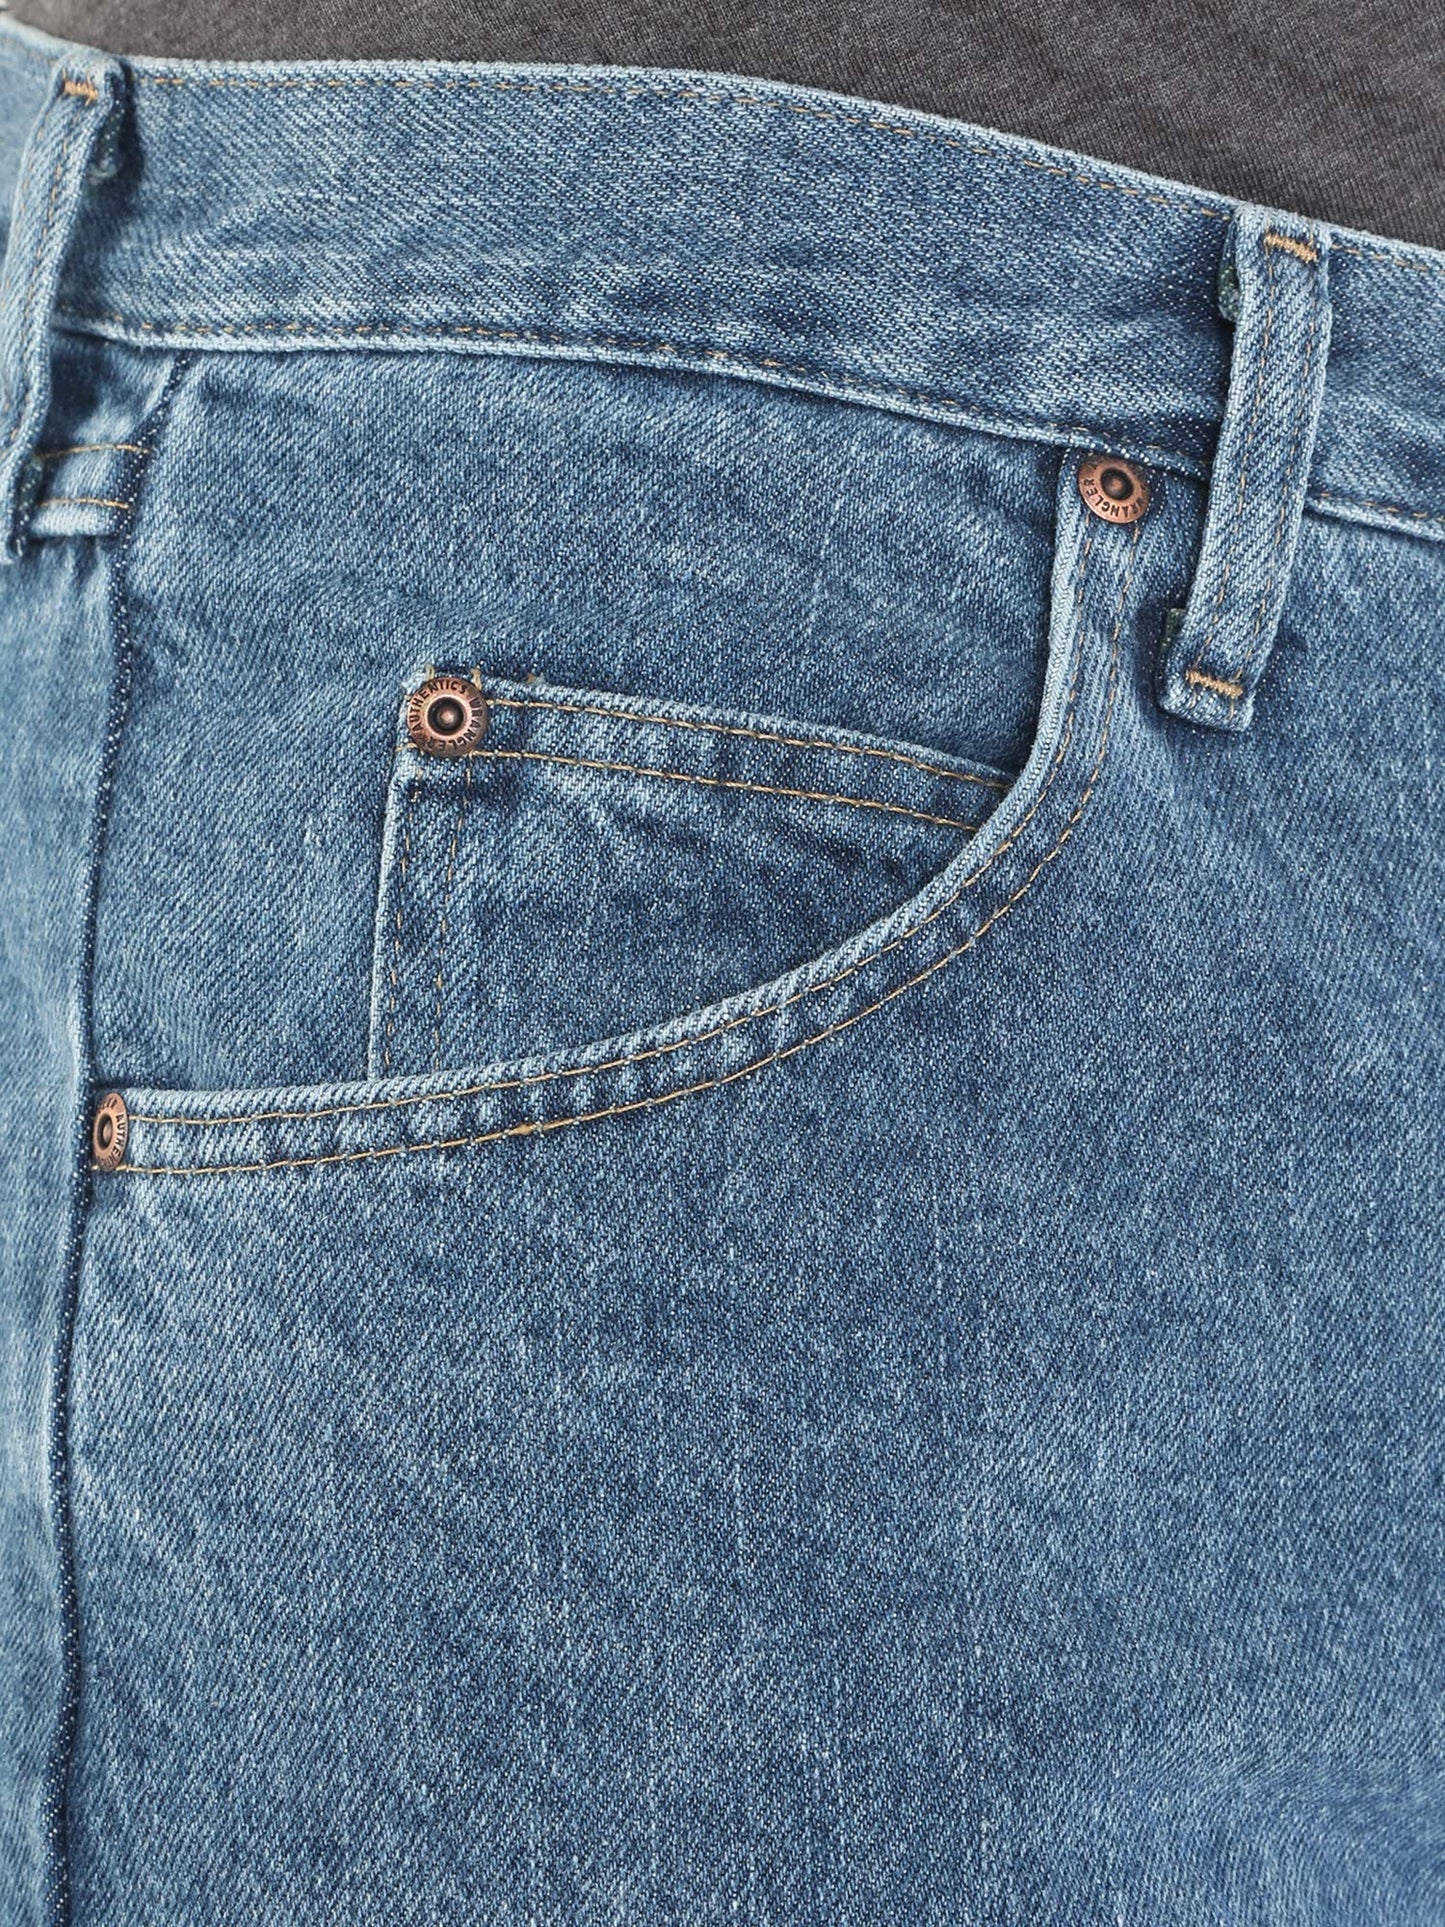 Wrangler Authentics Men's Classic 5-Pocket Relaxed Fit Cotton Jean, Vintage Stonewash, 38W x 32L